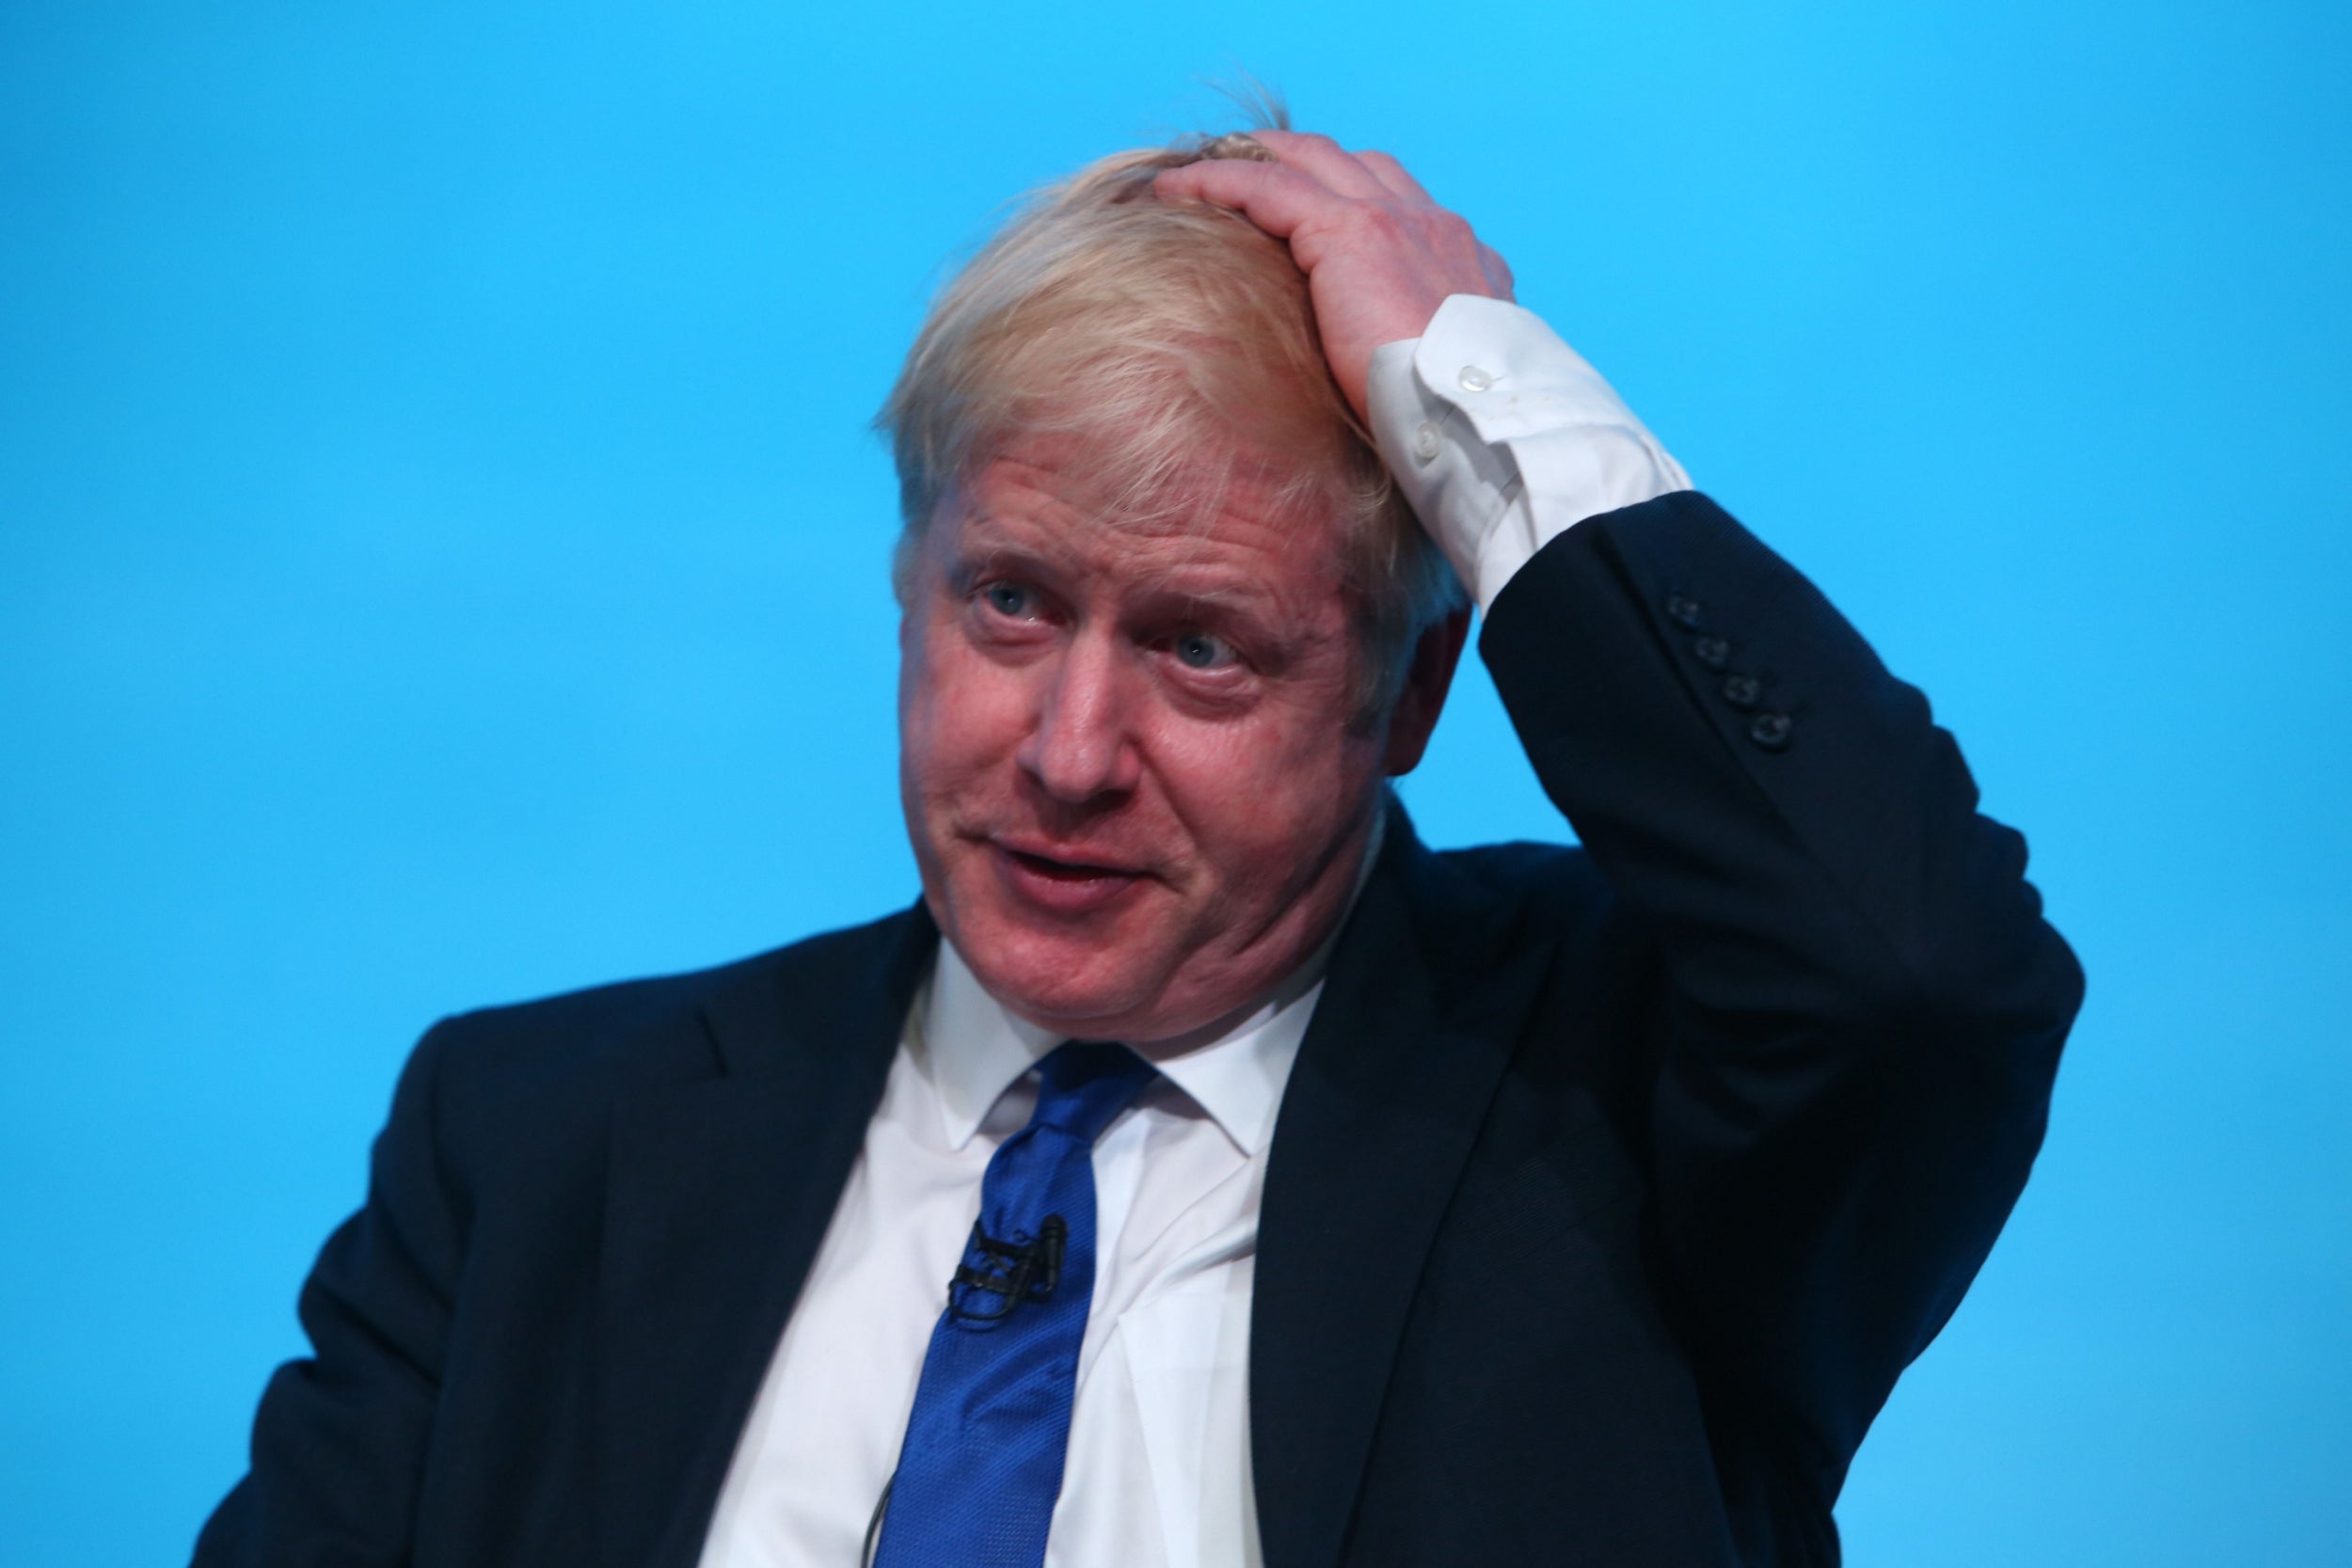 Stephen Barclay backs Boris Johnson, the frontrunner, for Tory leader